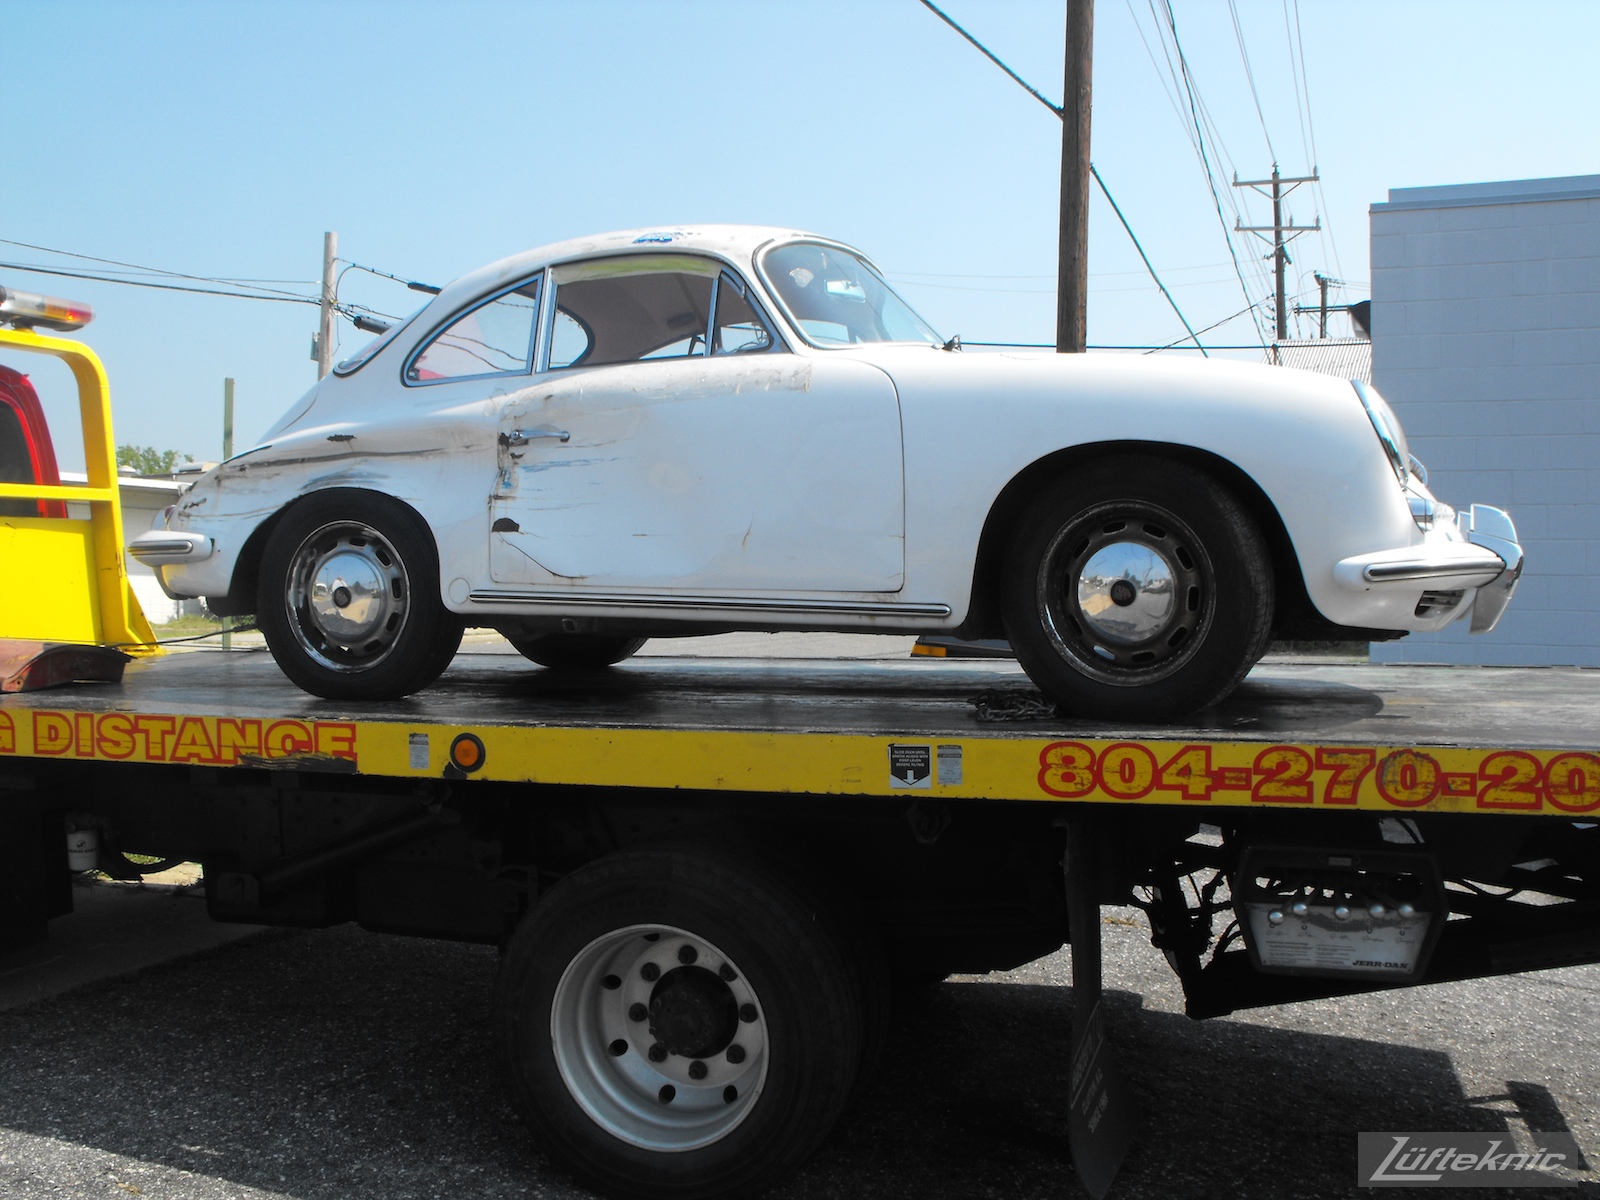 1964 Porsche 356SC restoration being towed in.